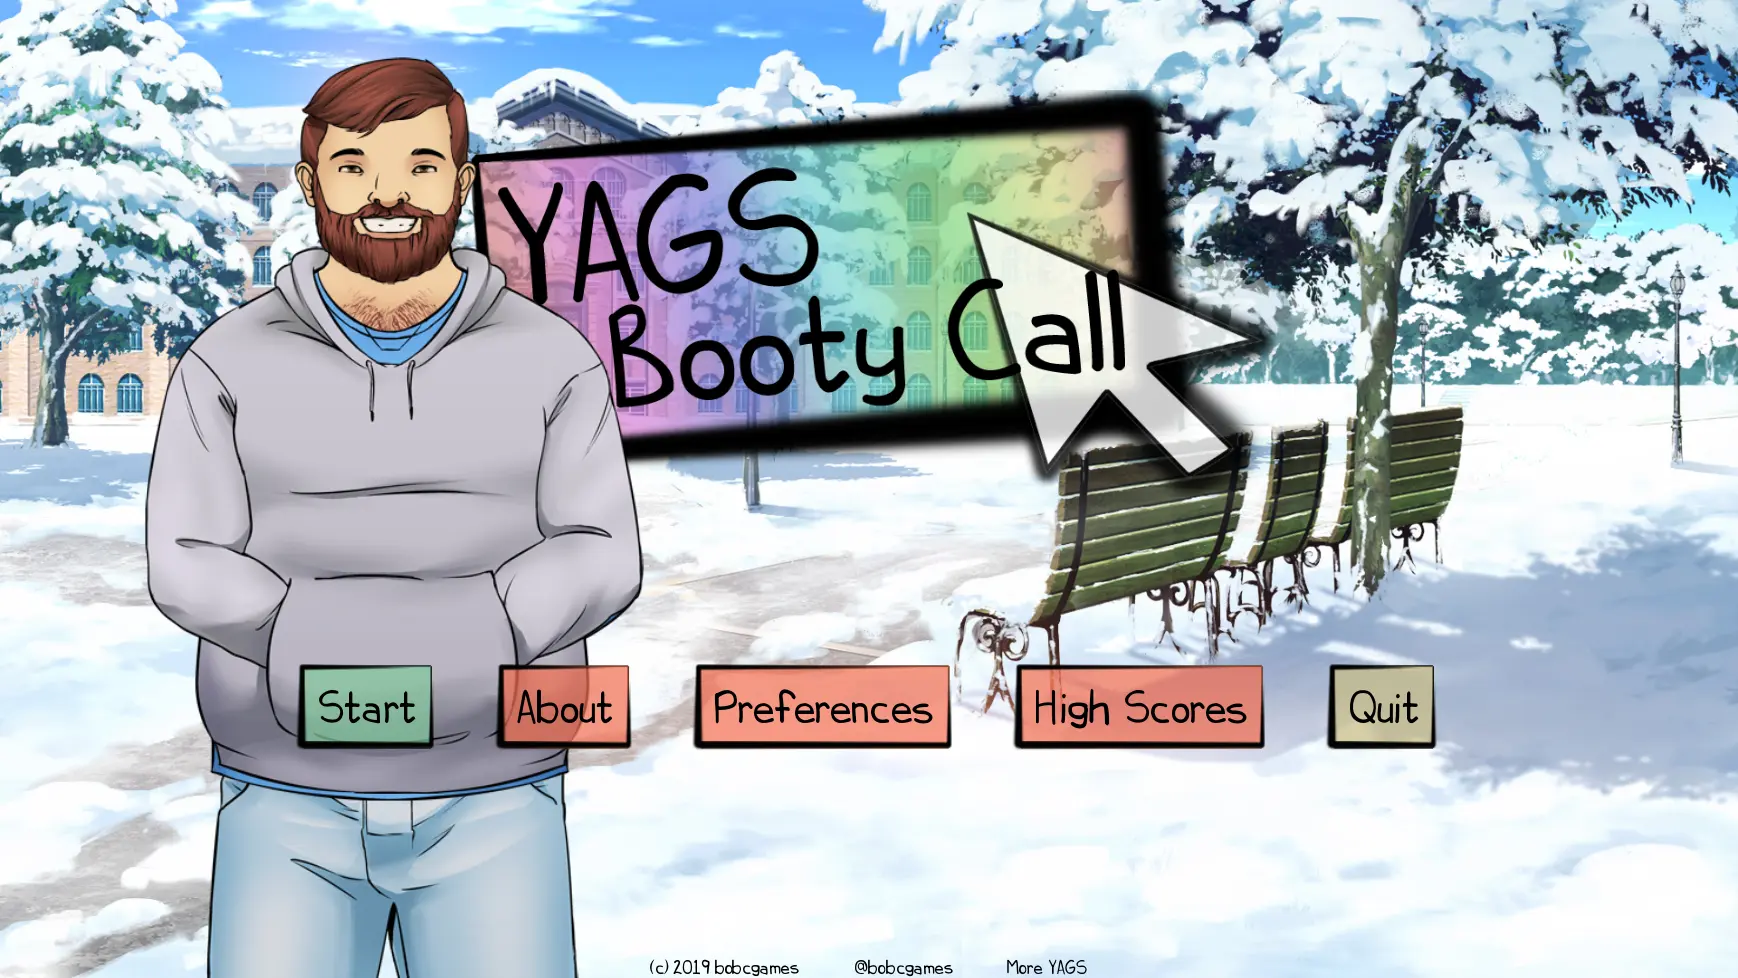 YAGS: Booty Call main image